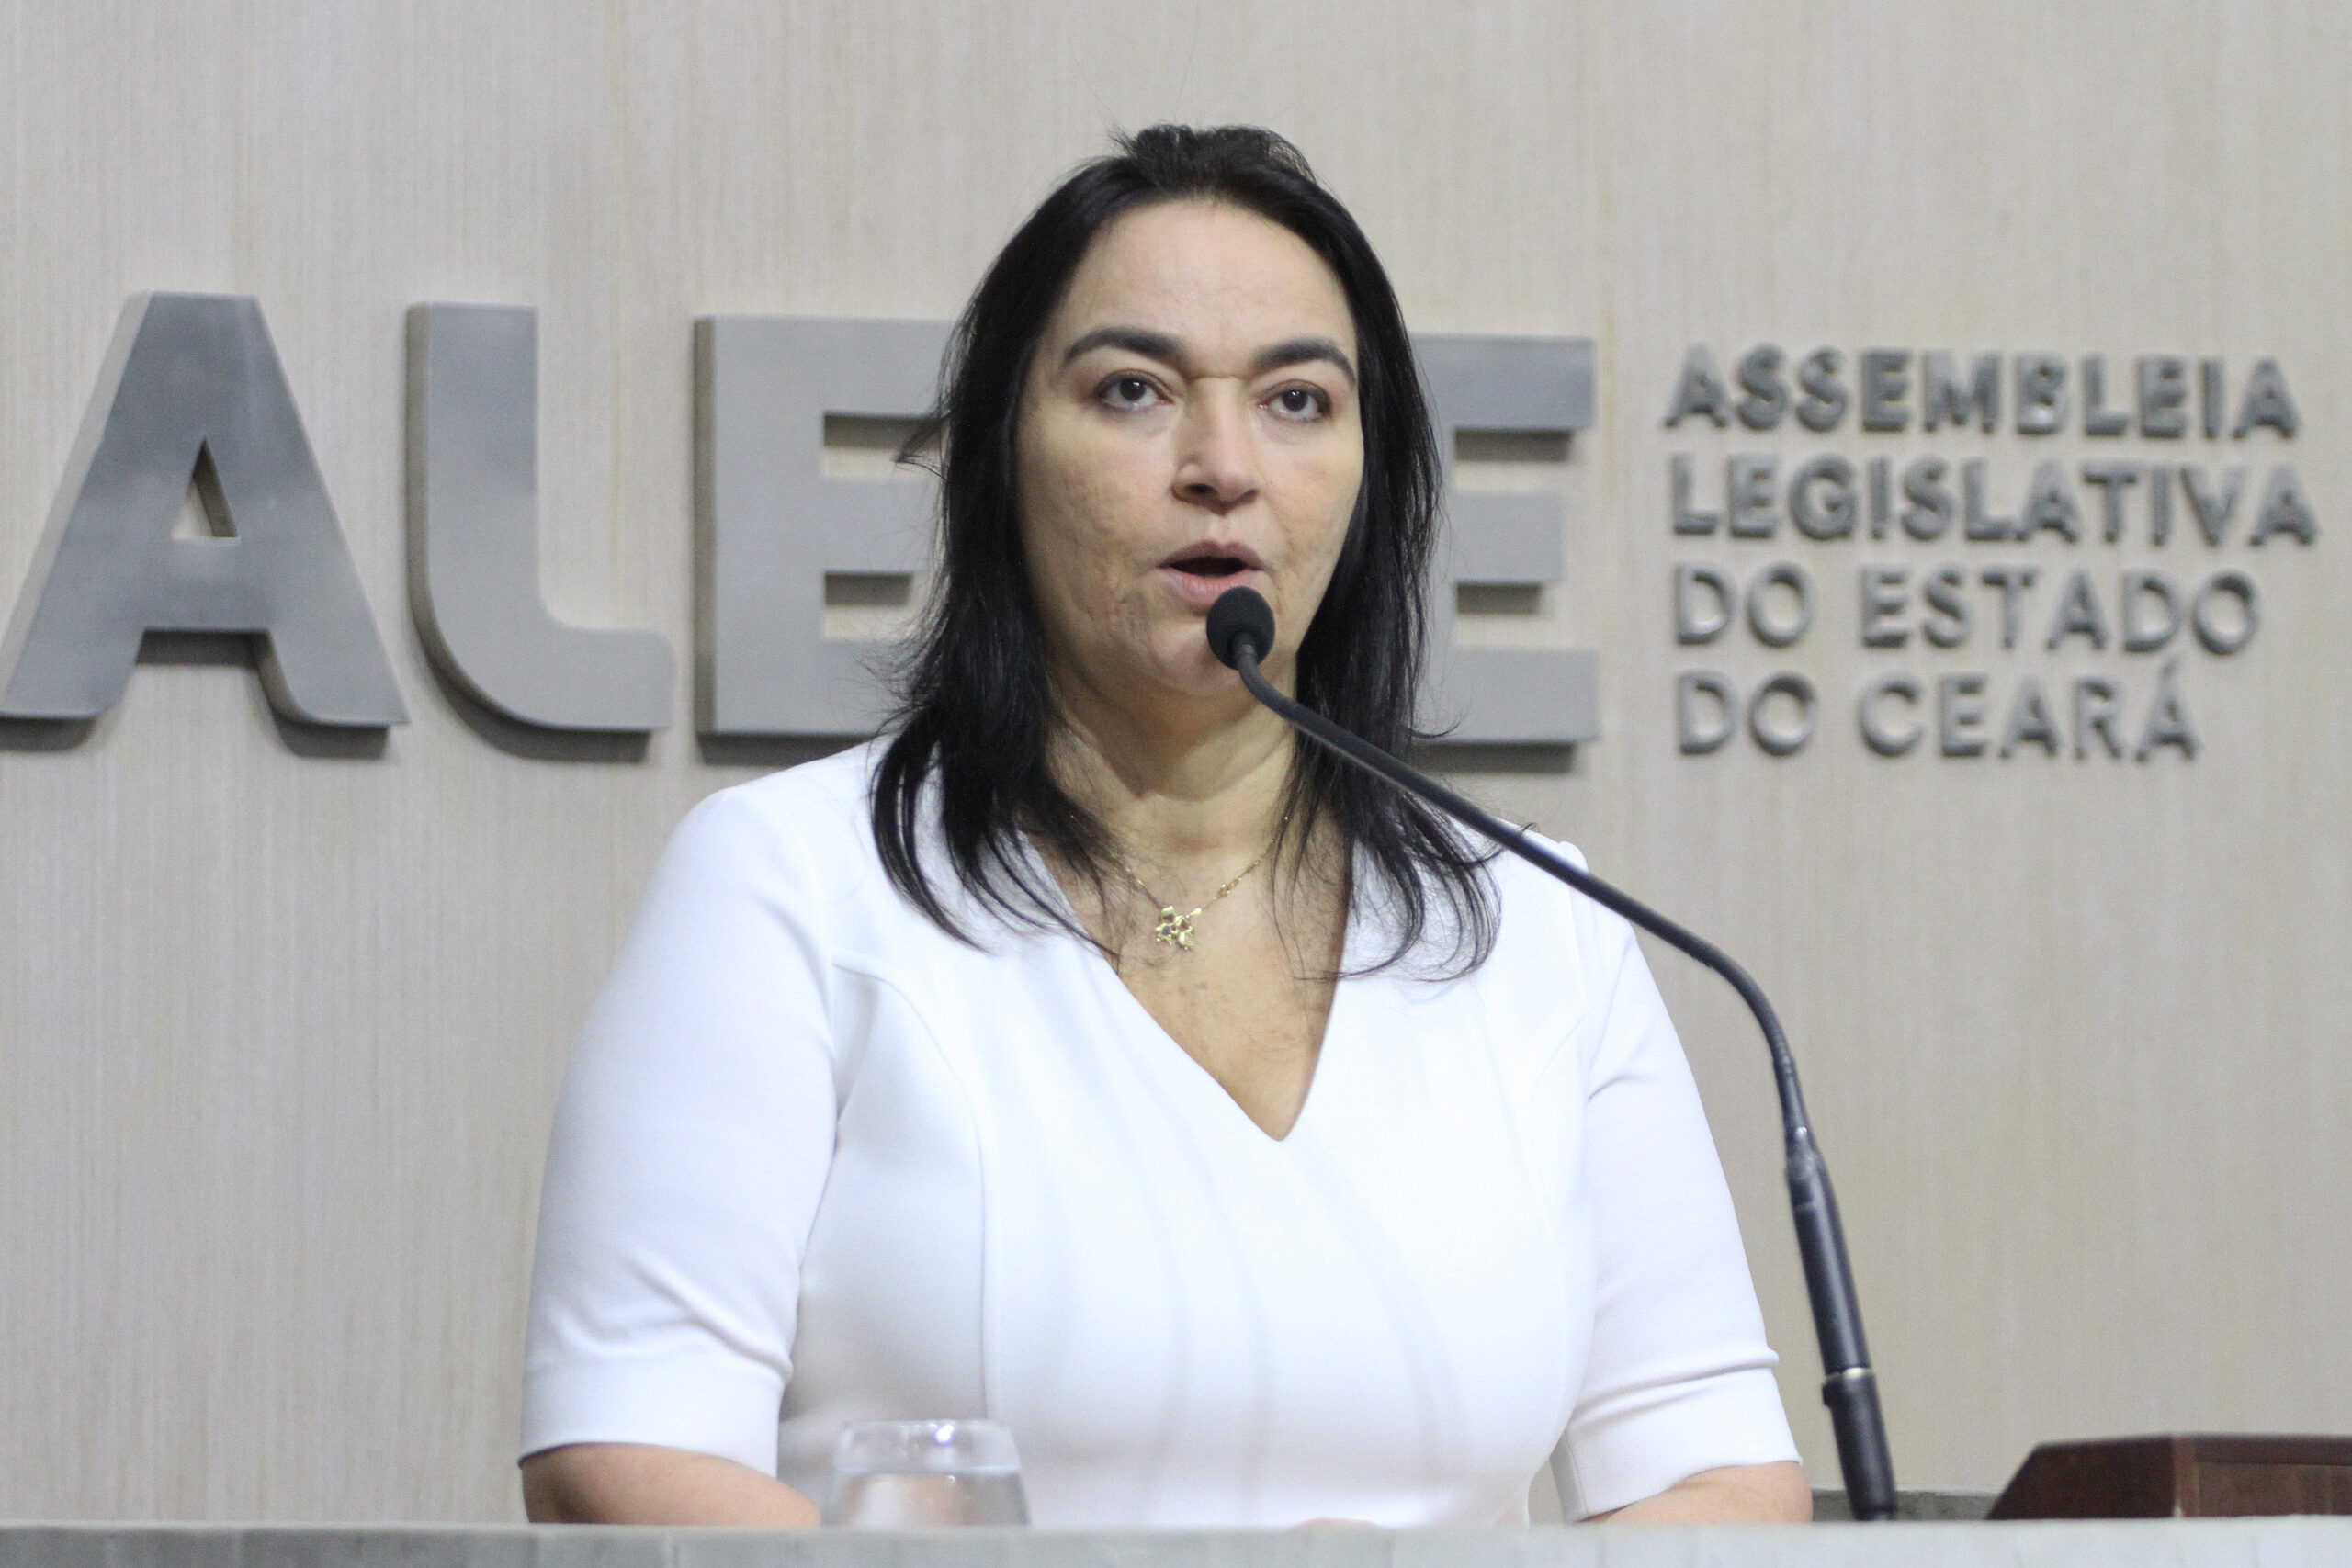 Dra. Silvana tece elogios a Evandro Leitão e diz que votaria nele no 2º turno caso venha a ser candidato a prefeito de Fortaleza em 2024